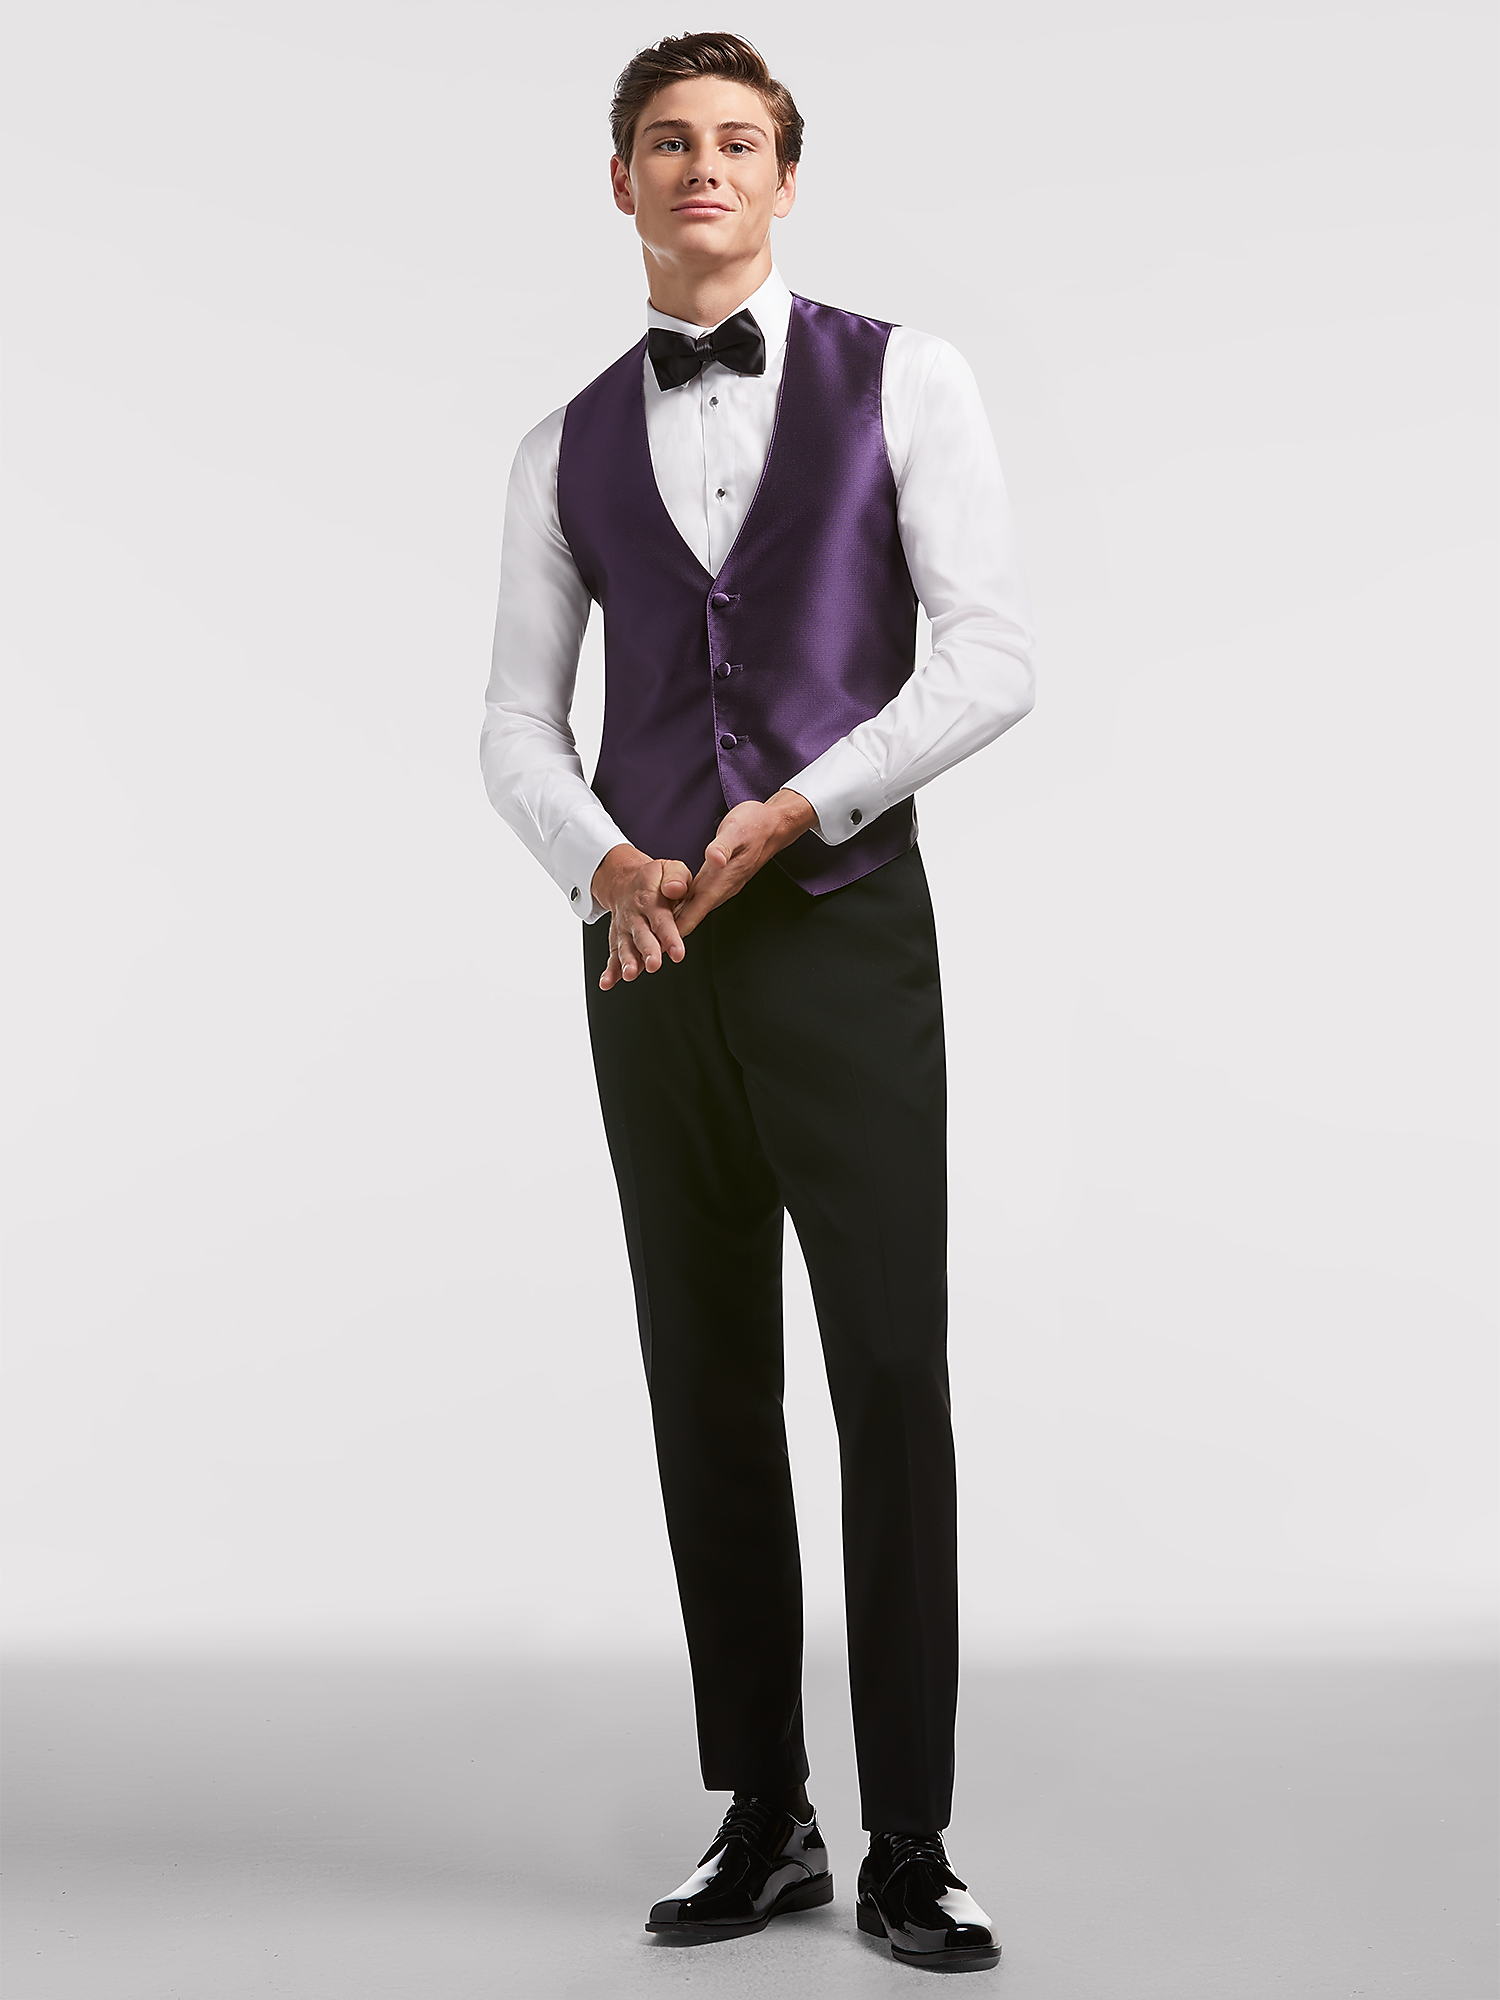 Black Shawl Lapel Tuxedo by Calvin Klein | Tuxedo Rental